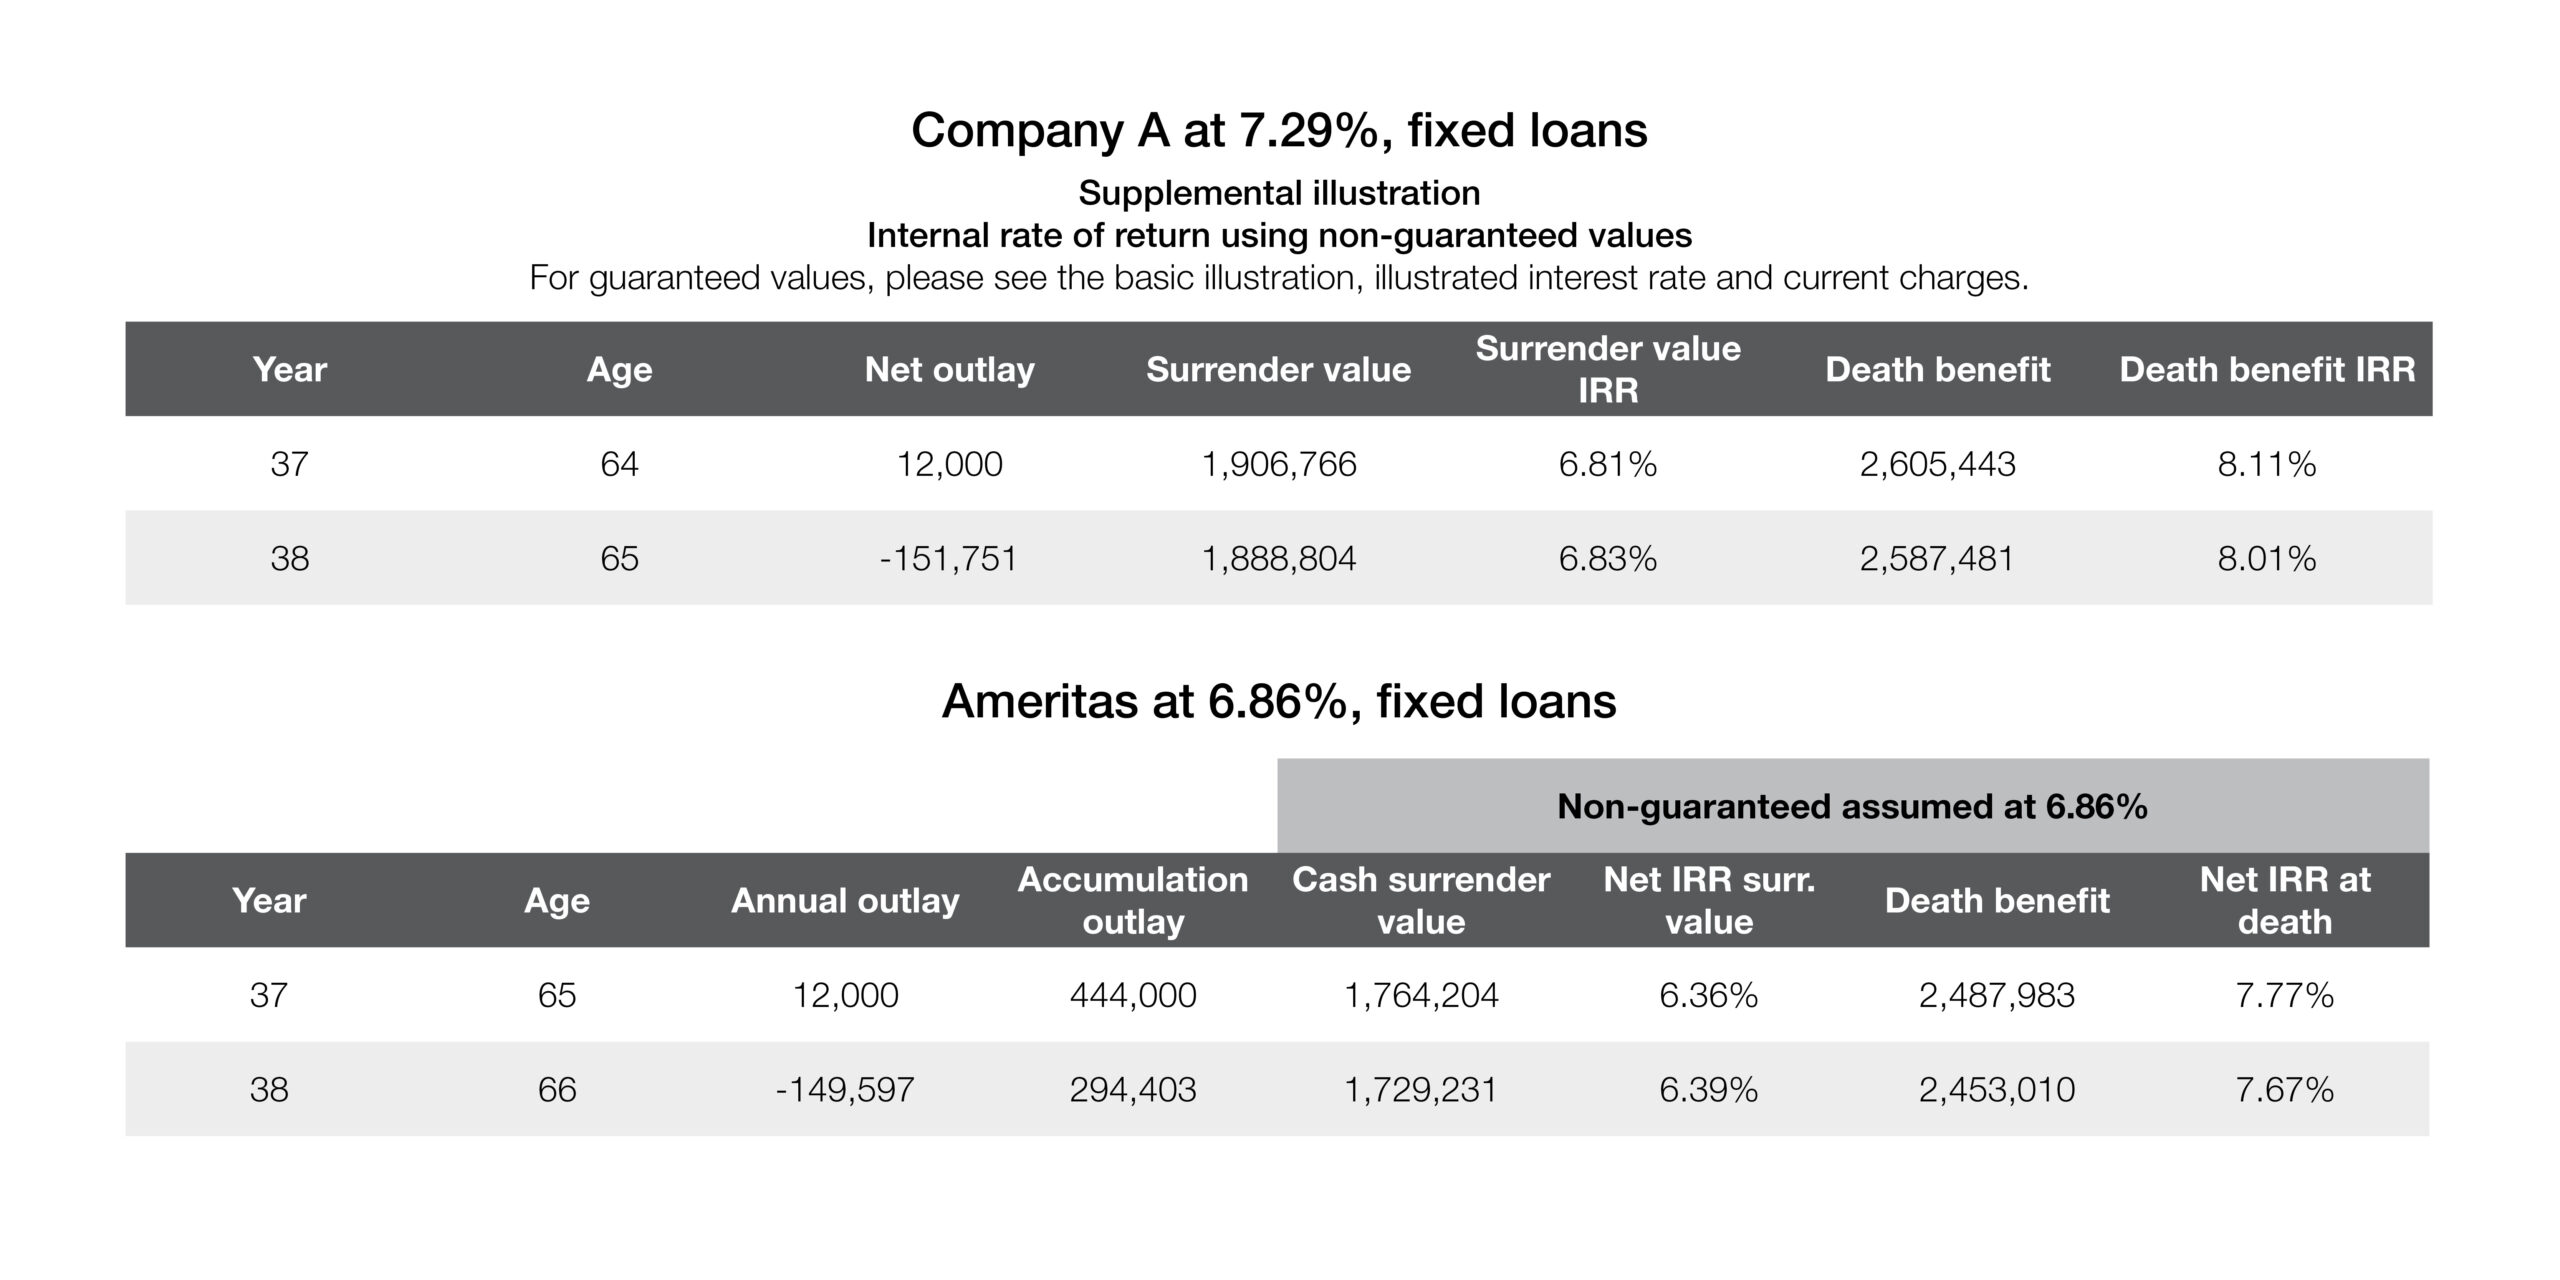 Company A at 7.29%, fixed loans and Ameritas at 6.86%, fixed loans chart